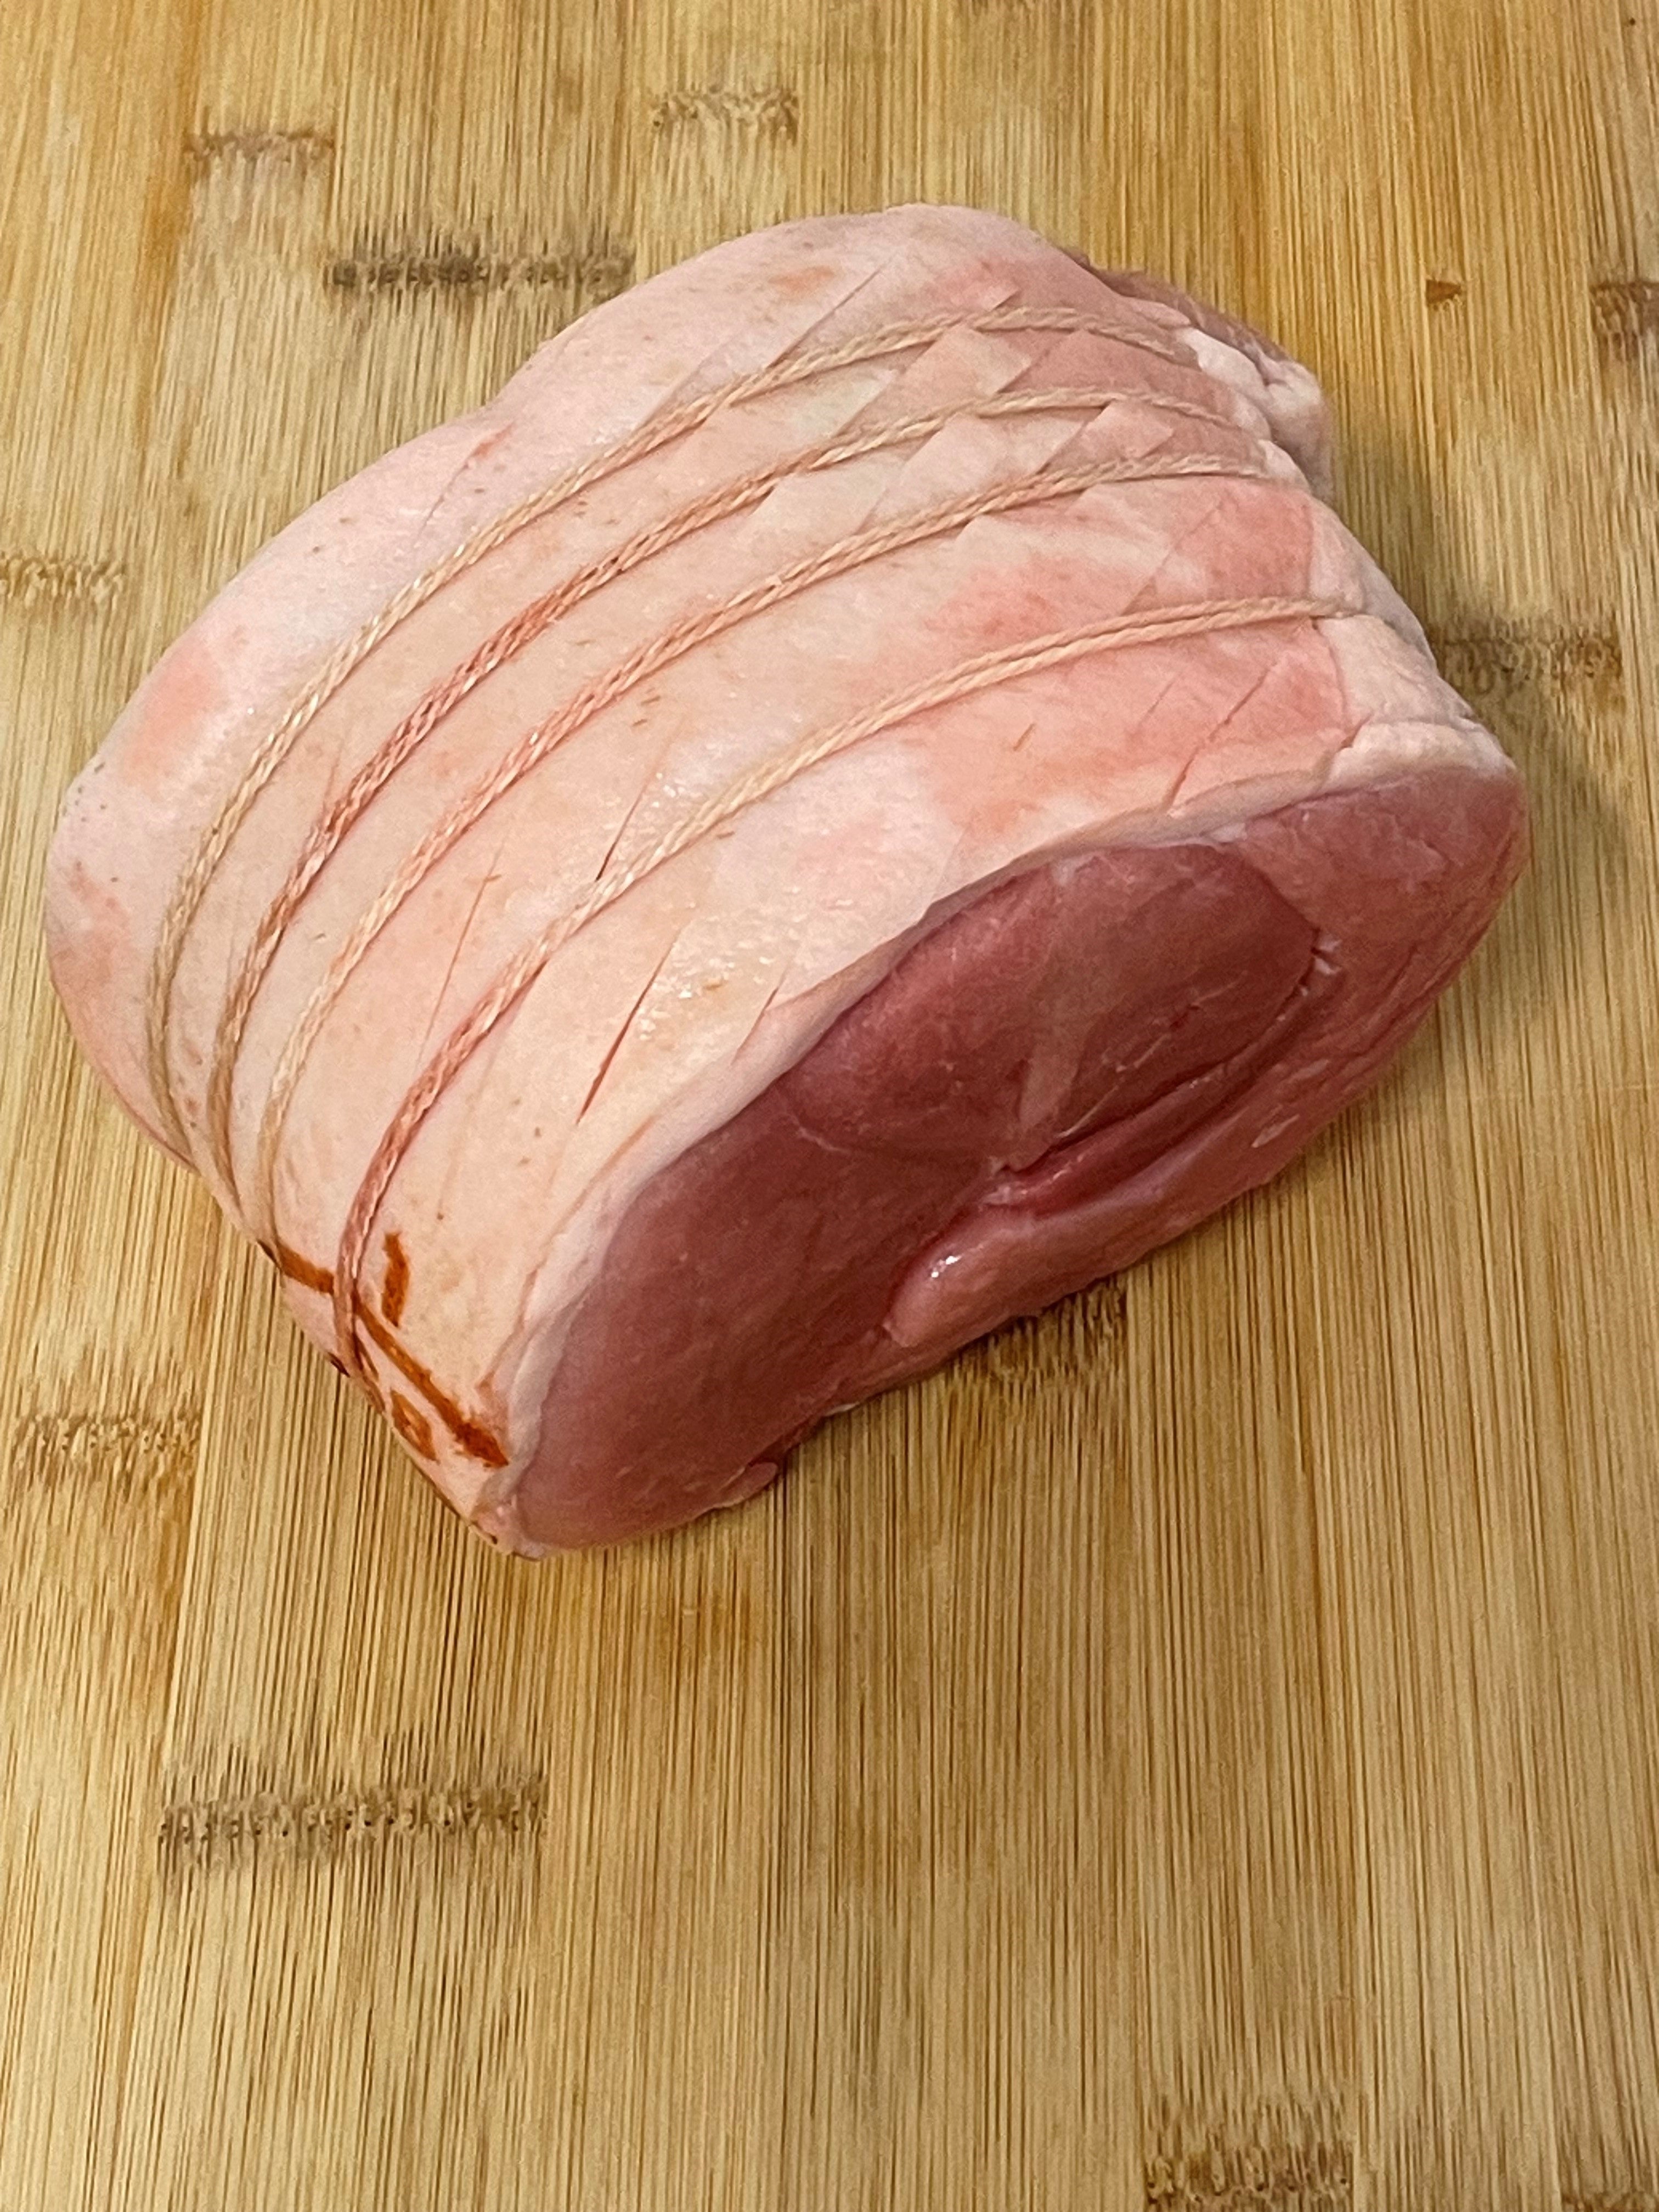 Pork Leg Joint (Boneless) 2.2kg